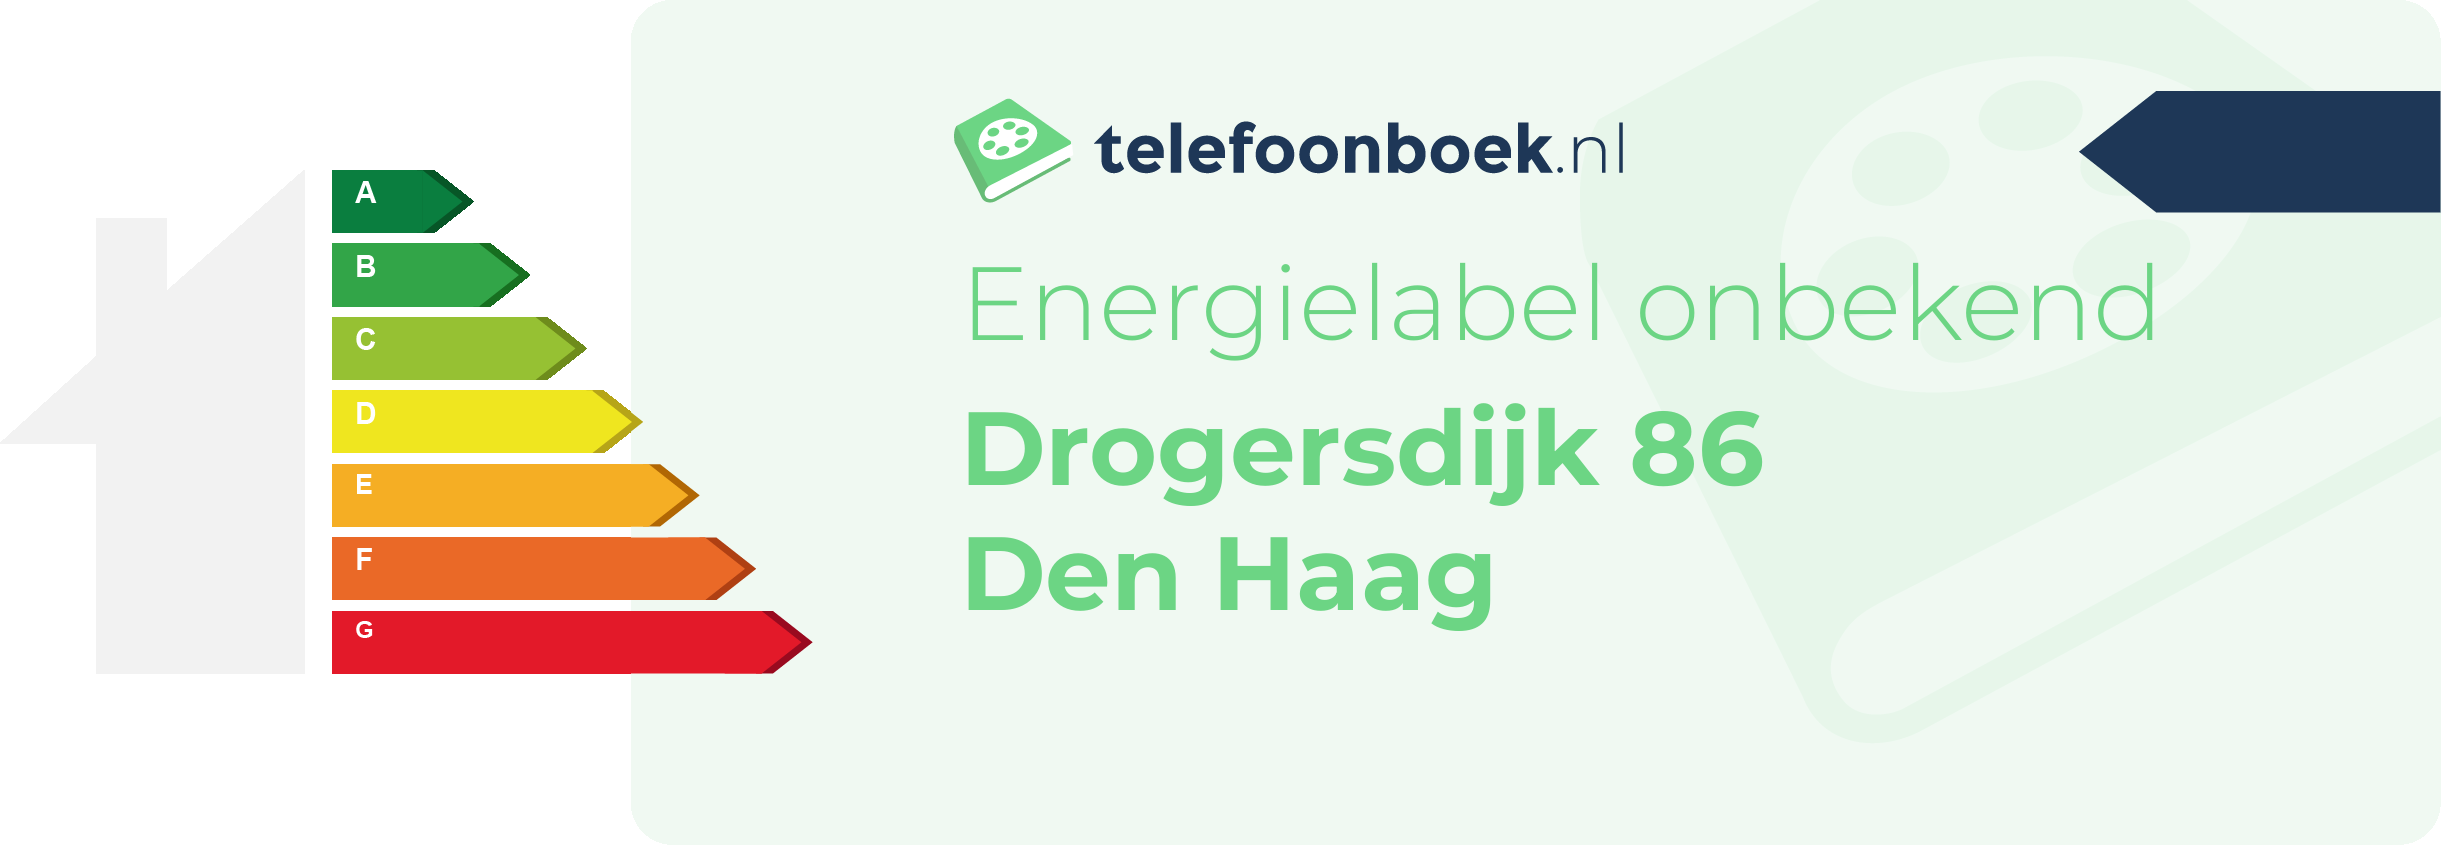 Energielabel Drogersdijk 86 Den Haag